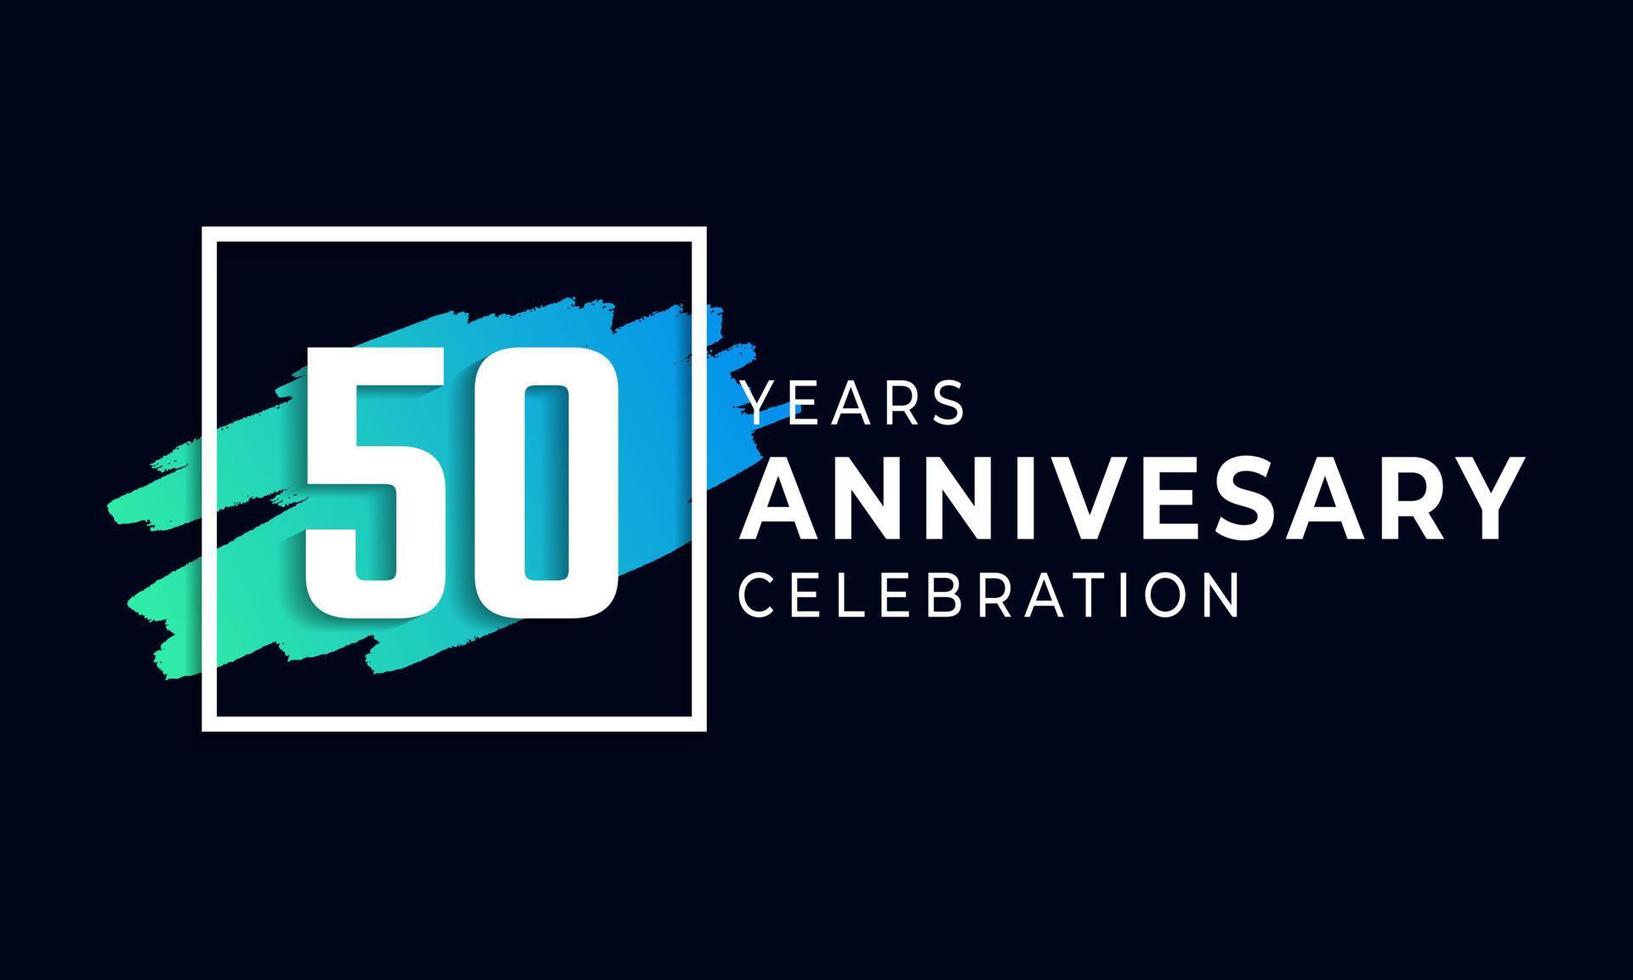 50-jarig jubileumfeest met blauwe borstel en vierkant symbool. gelukkige verjaardag groet viert gebeurtenis geïsoleerd op zwarte achtergrond vector